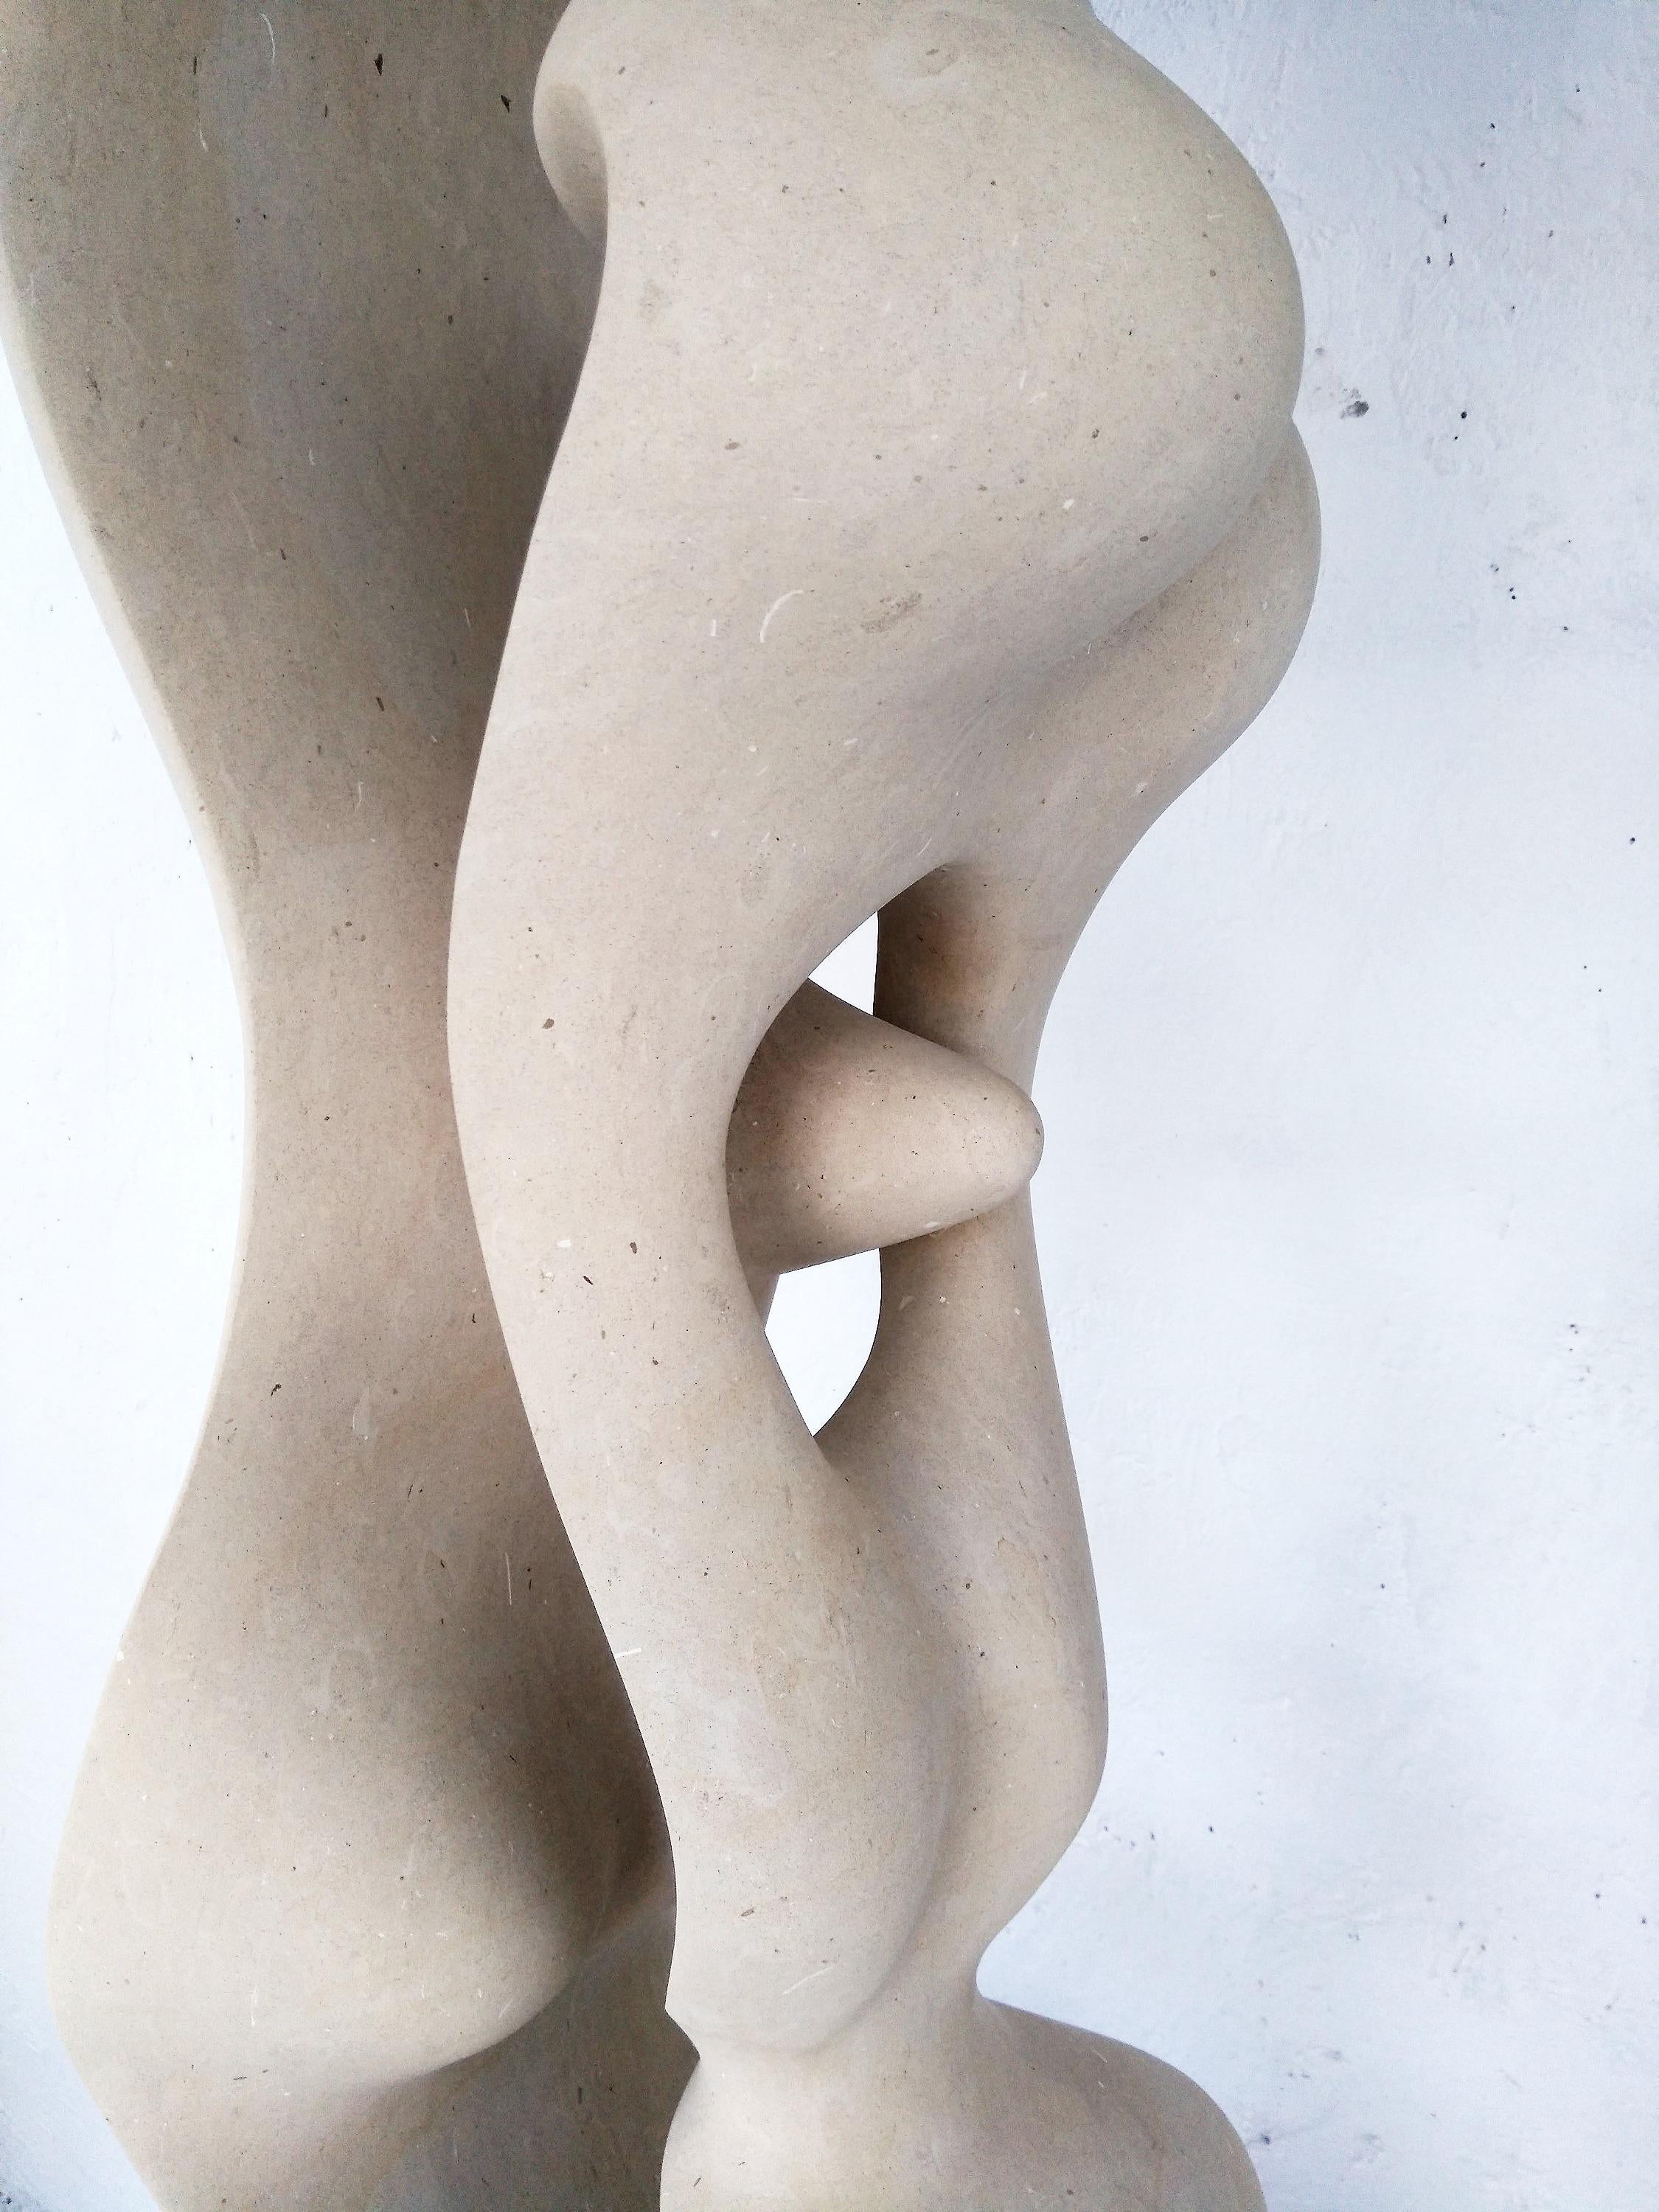 Abstrakte Skulptur inasis von Renzo Buttazzo aus Italien aus dem 21.

Skulptur in Lecce Stein
Wird mit einem Echtheitszertifikat geliefert.

Seit 1886 arbeitet Renzo Buttazzo mit Pietra Leccese (Kalkstein aus Lecce). In dieser Zeit verband er die